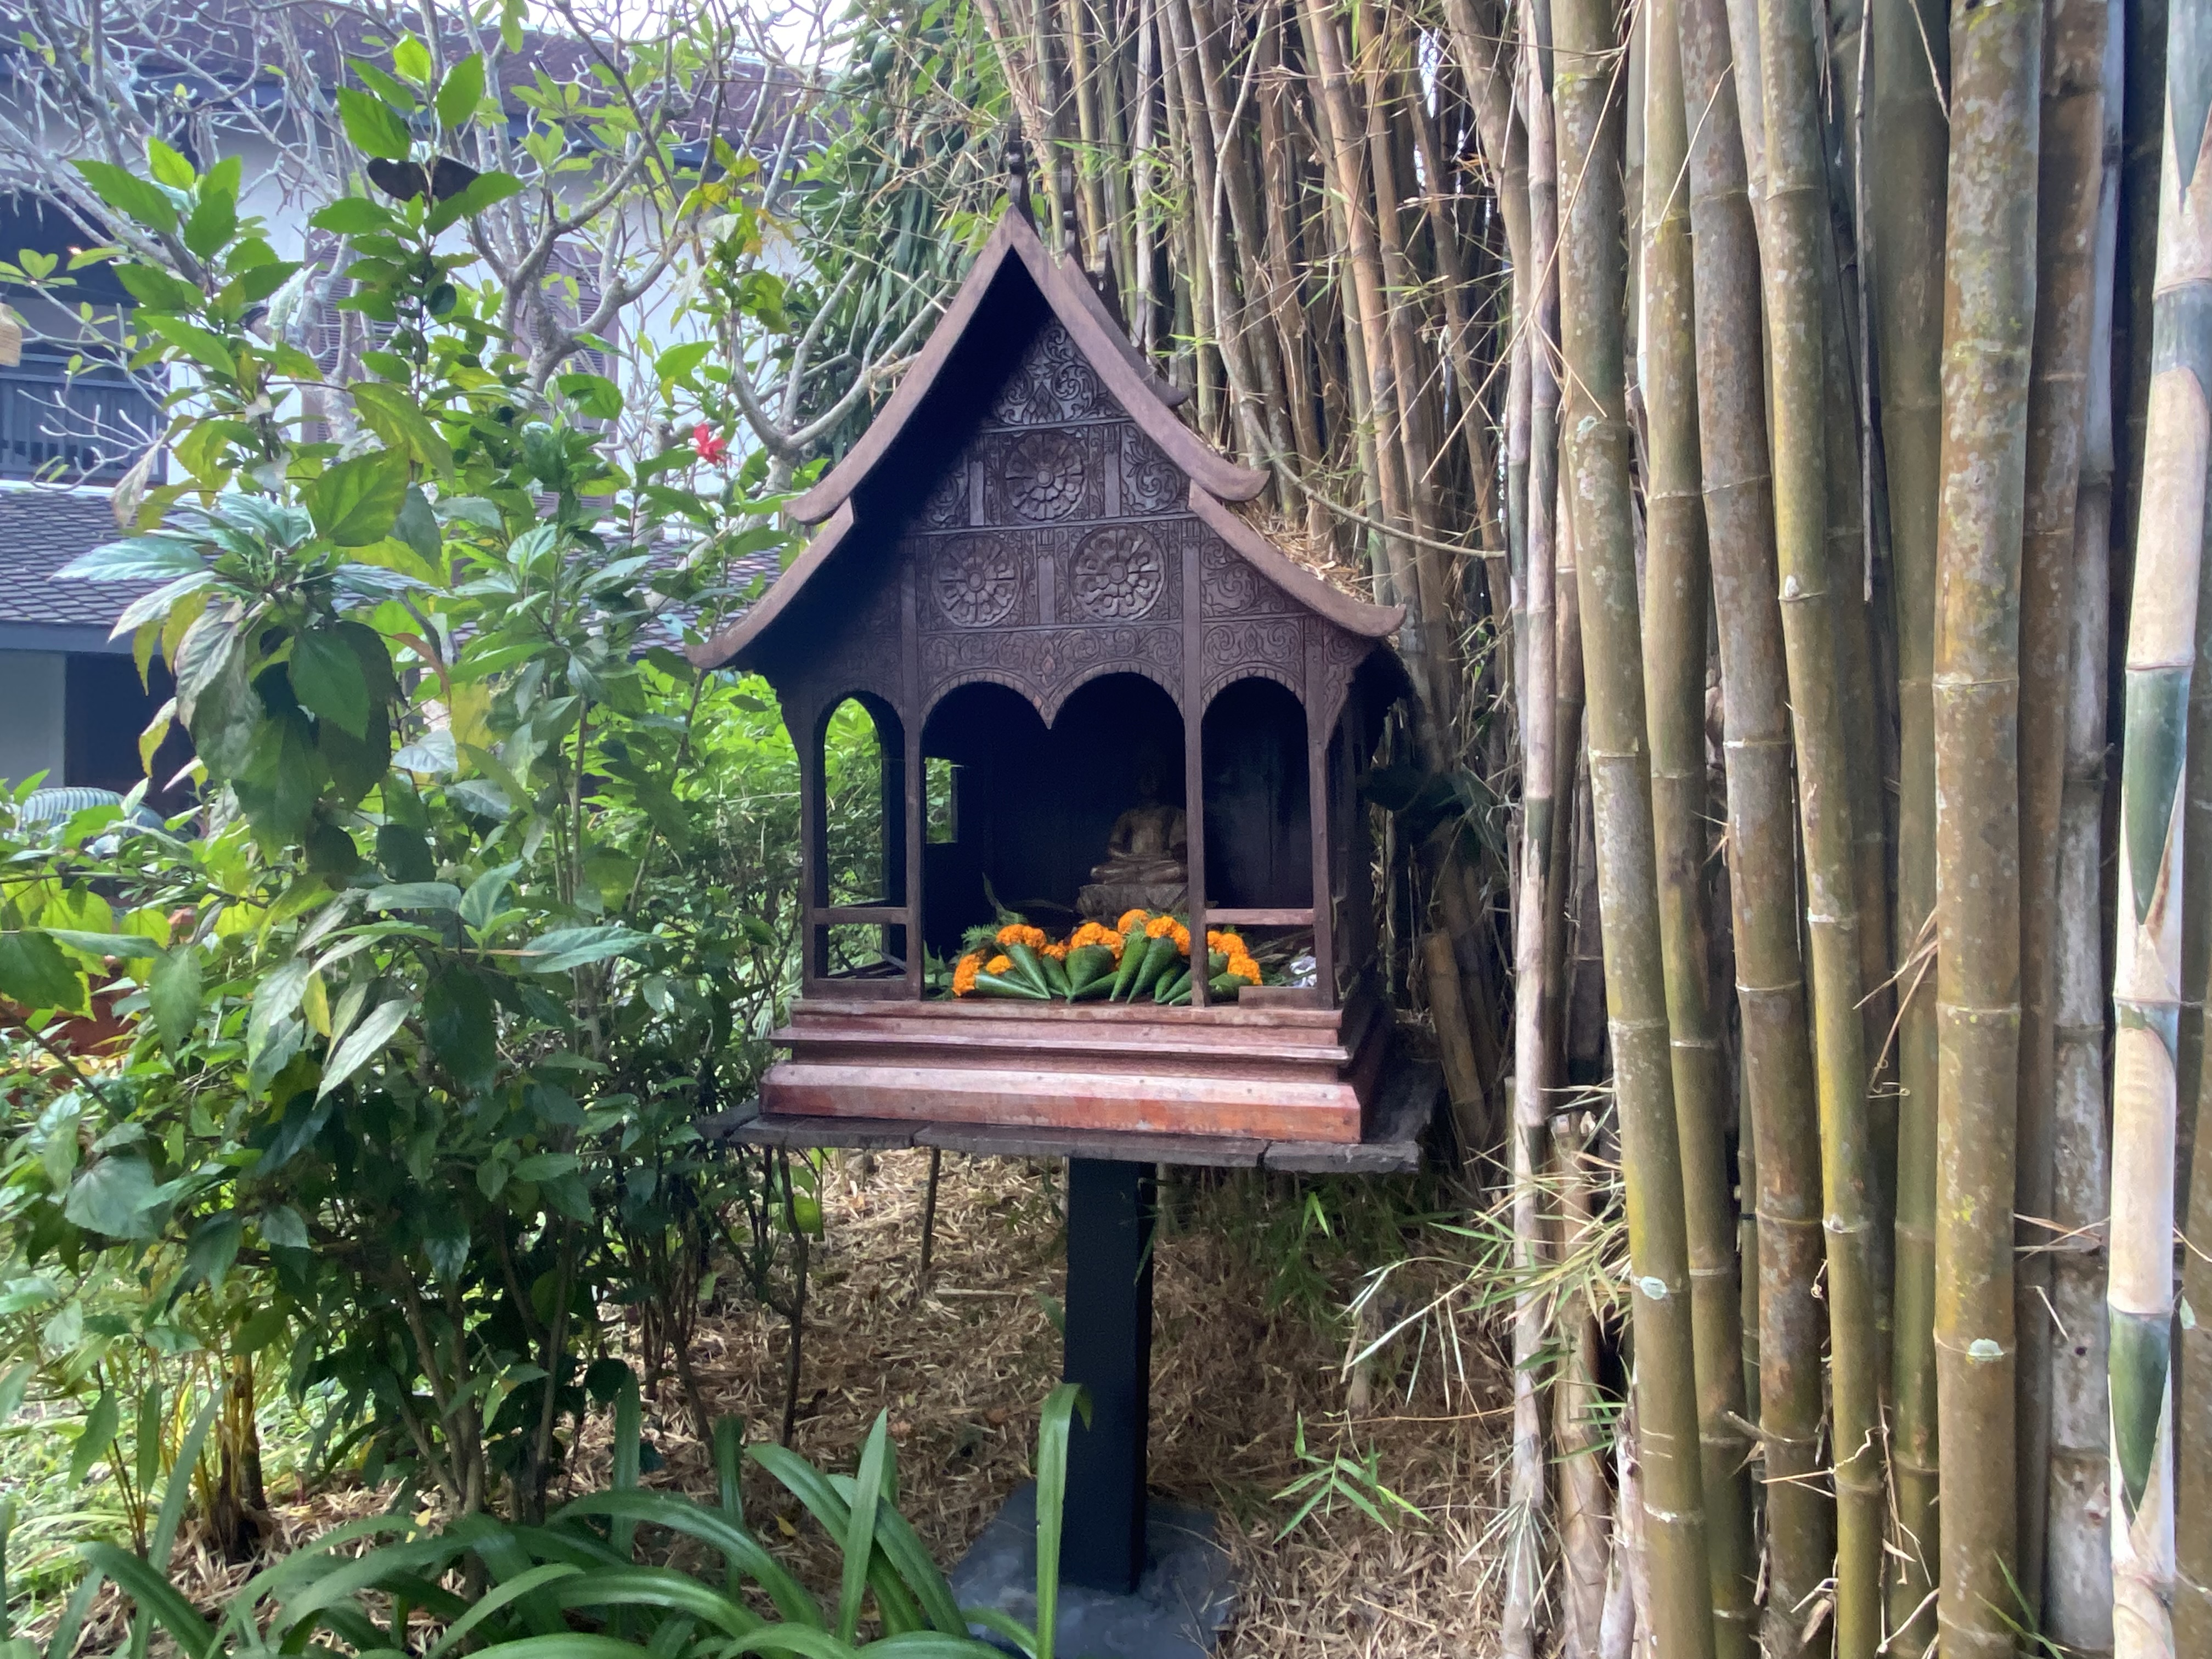 a small shrine in a garden